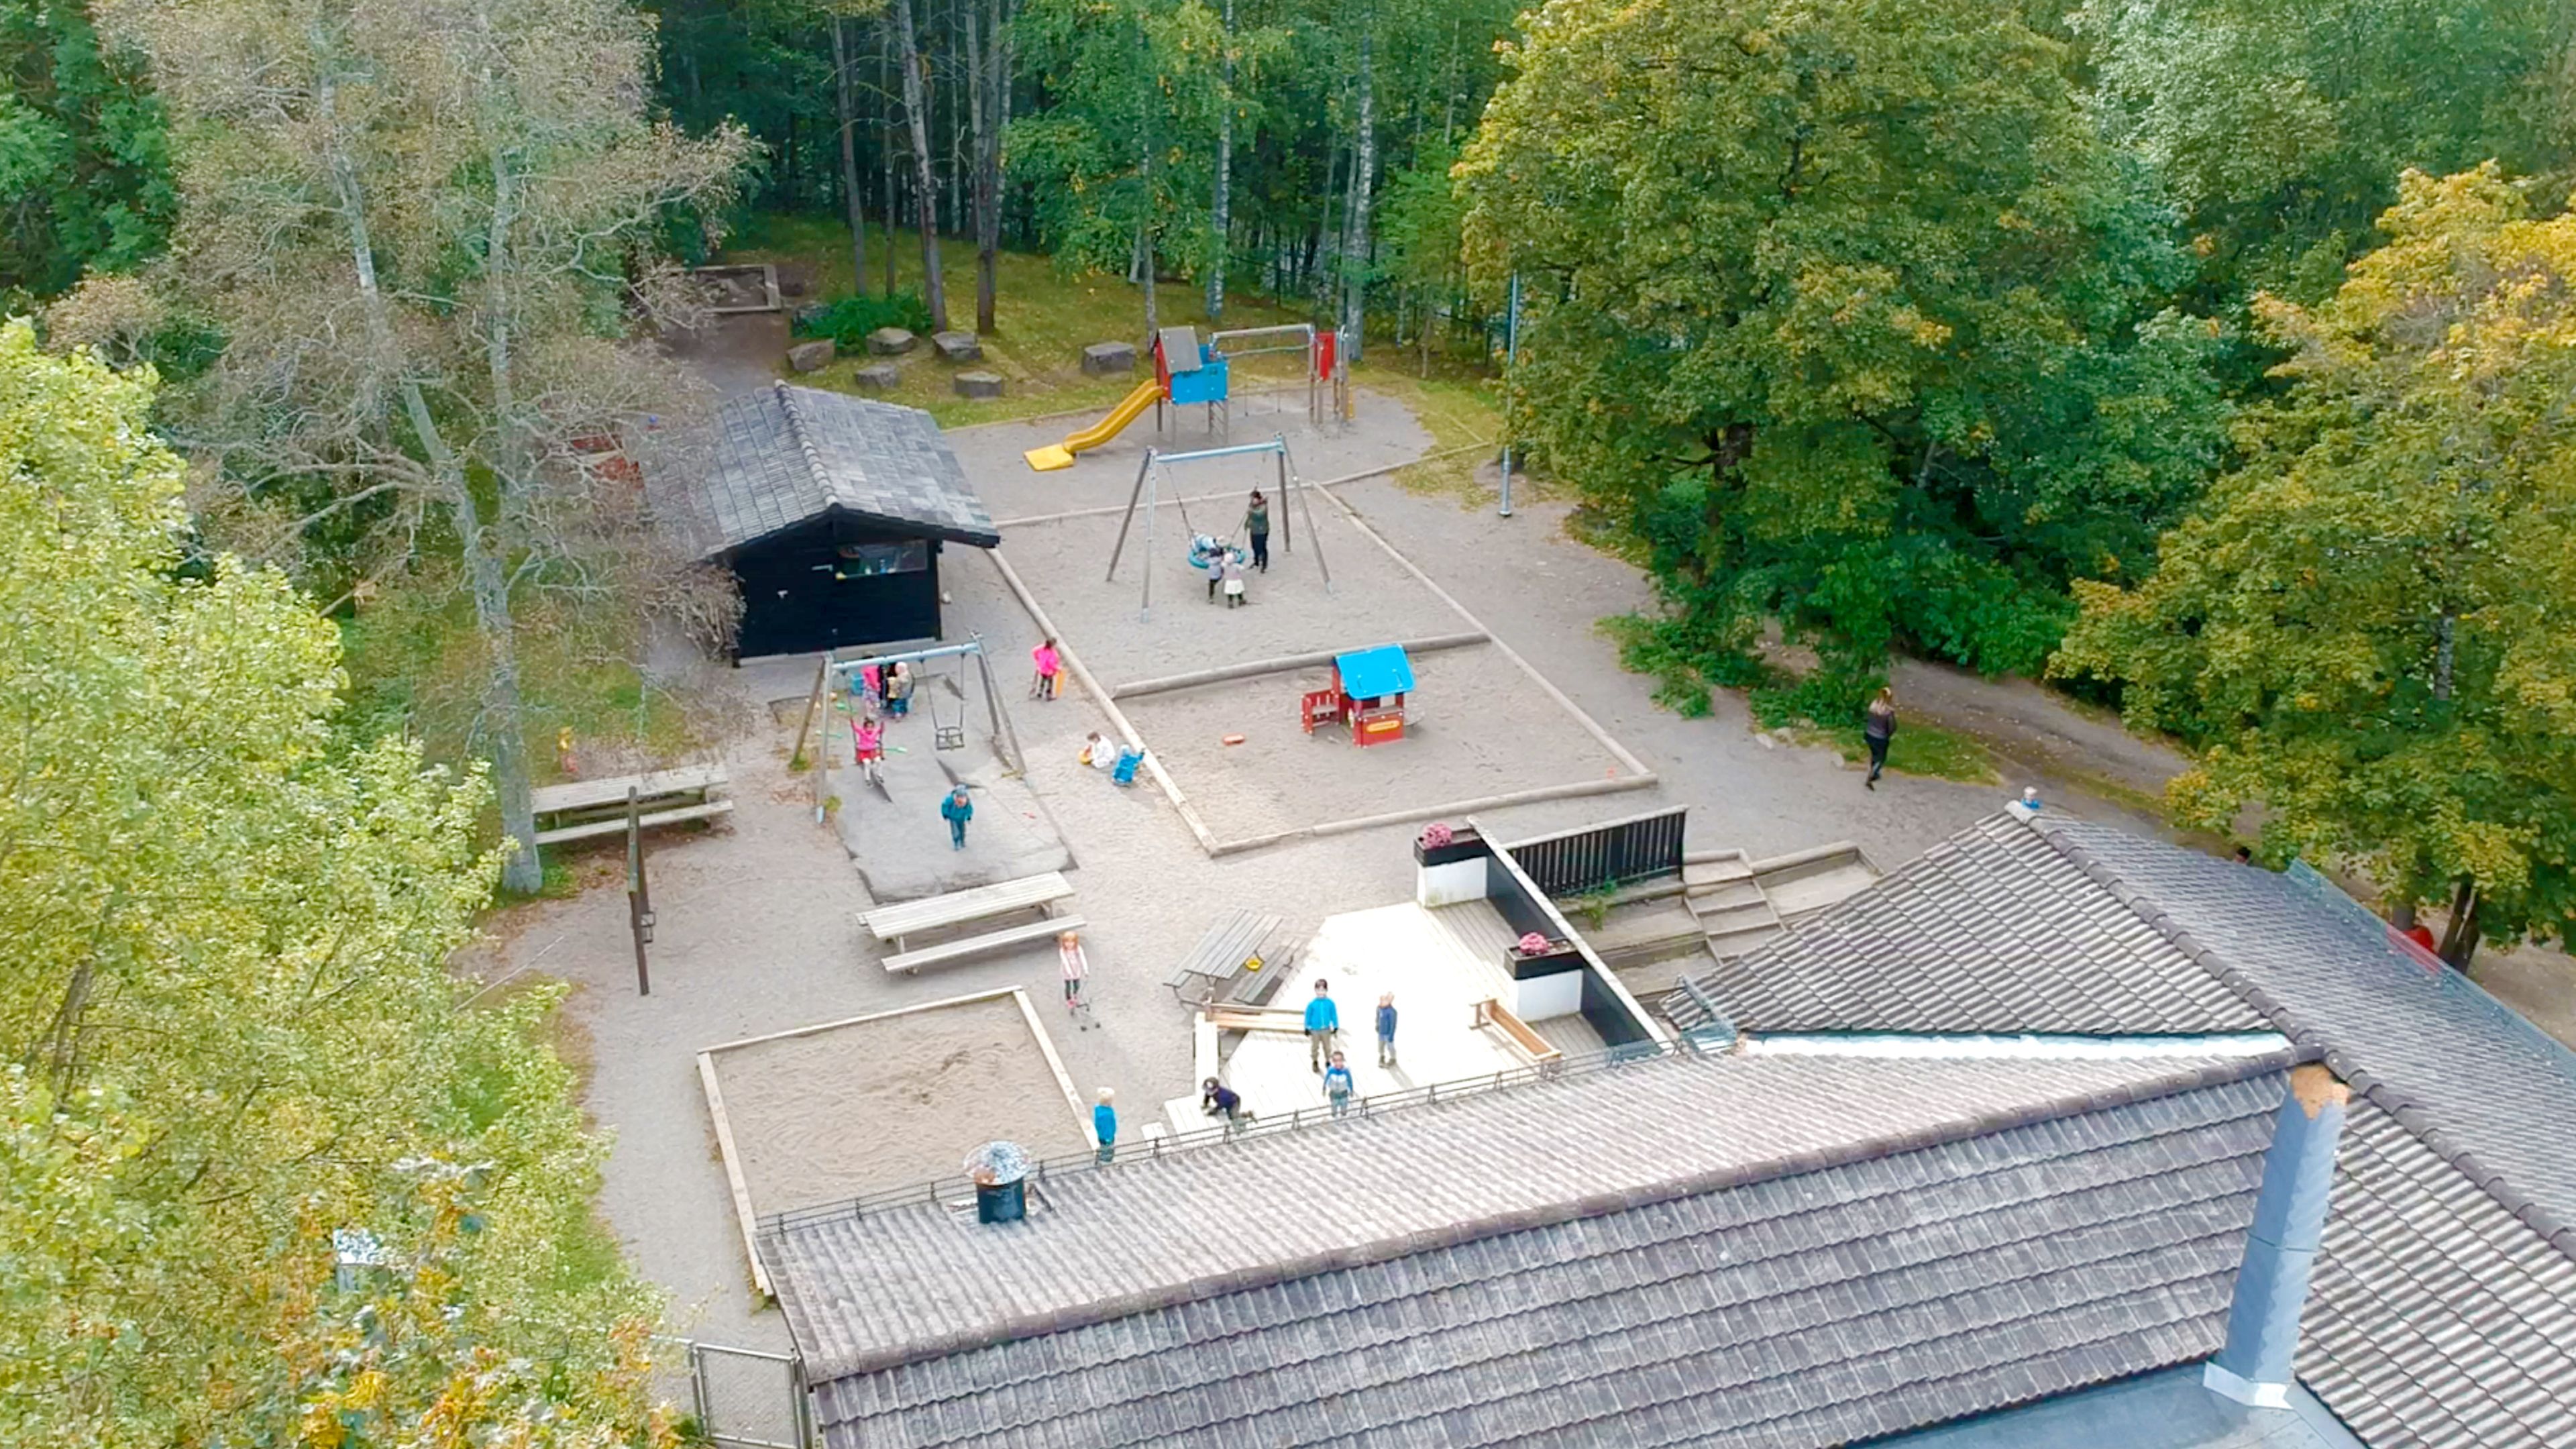 Oversiktsbilde av lekeområder ute på Frydenhaug. Mange barn som leker